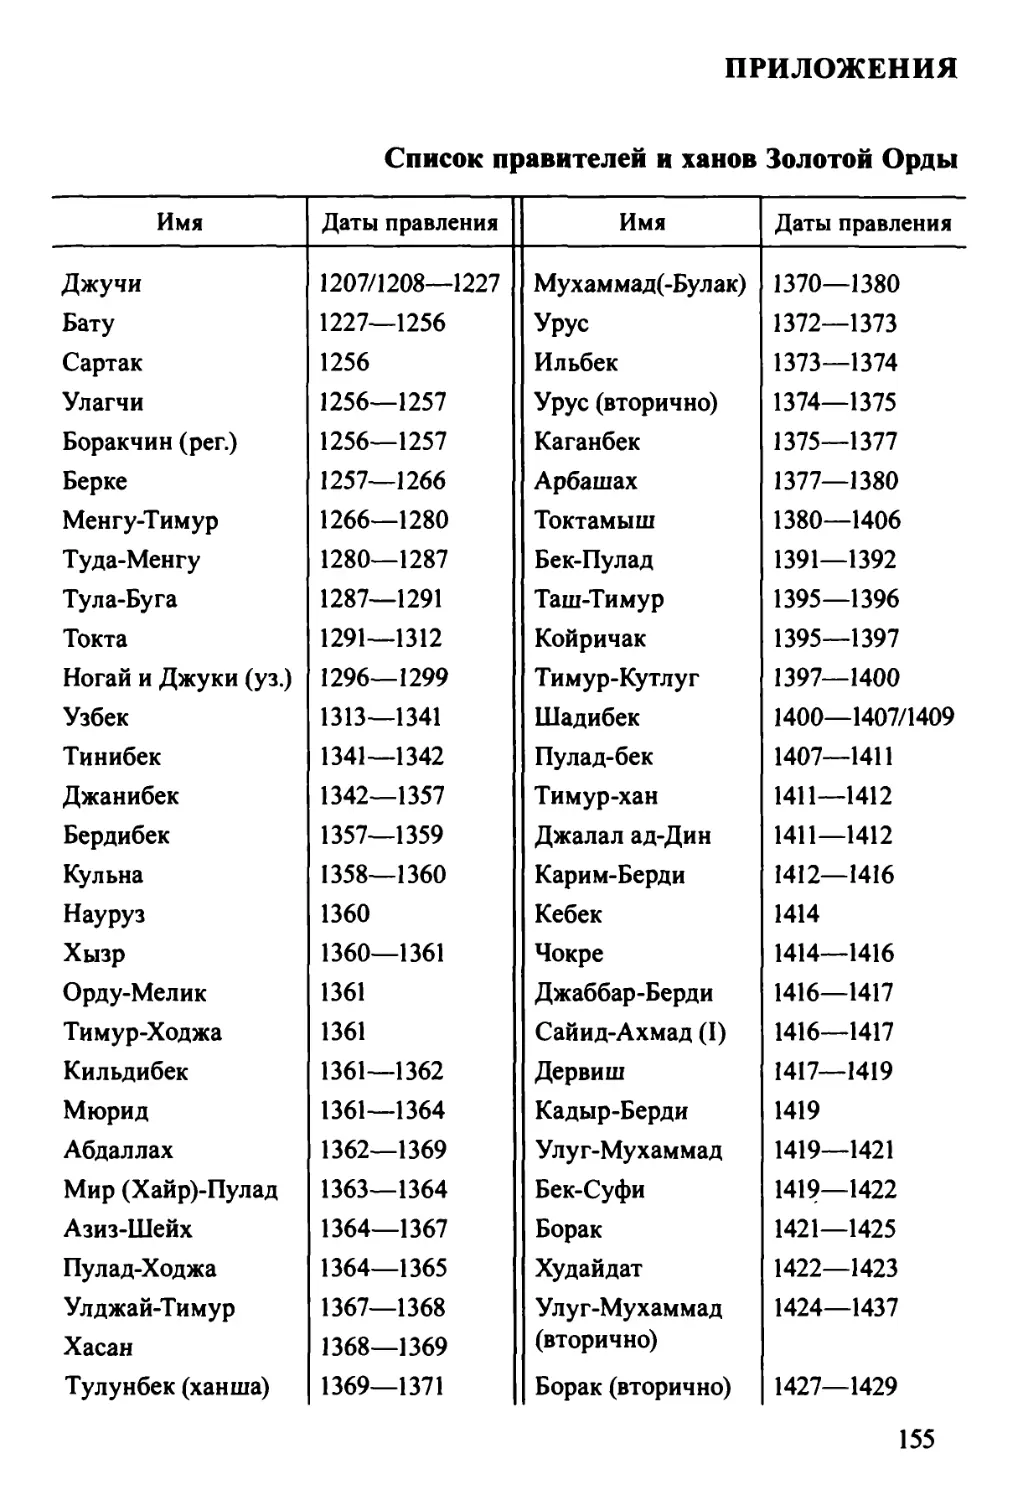 Приложения
Список правителей и ханов Золотой Орды